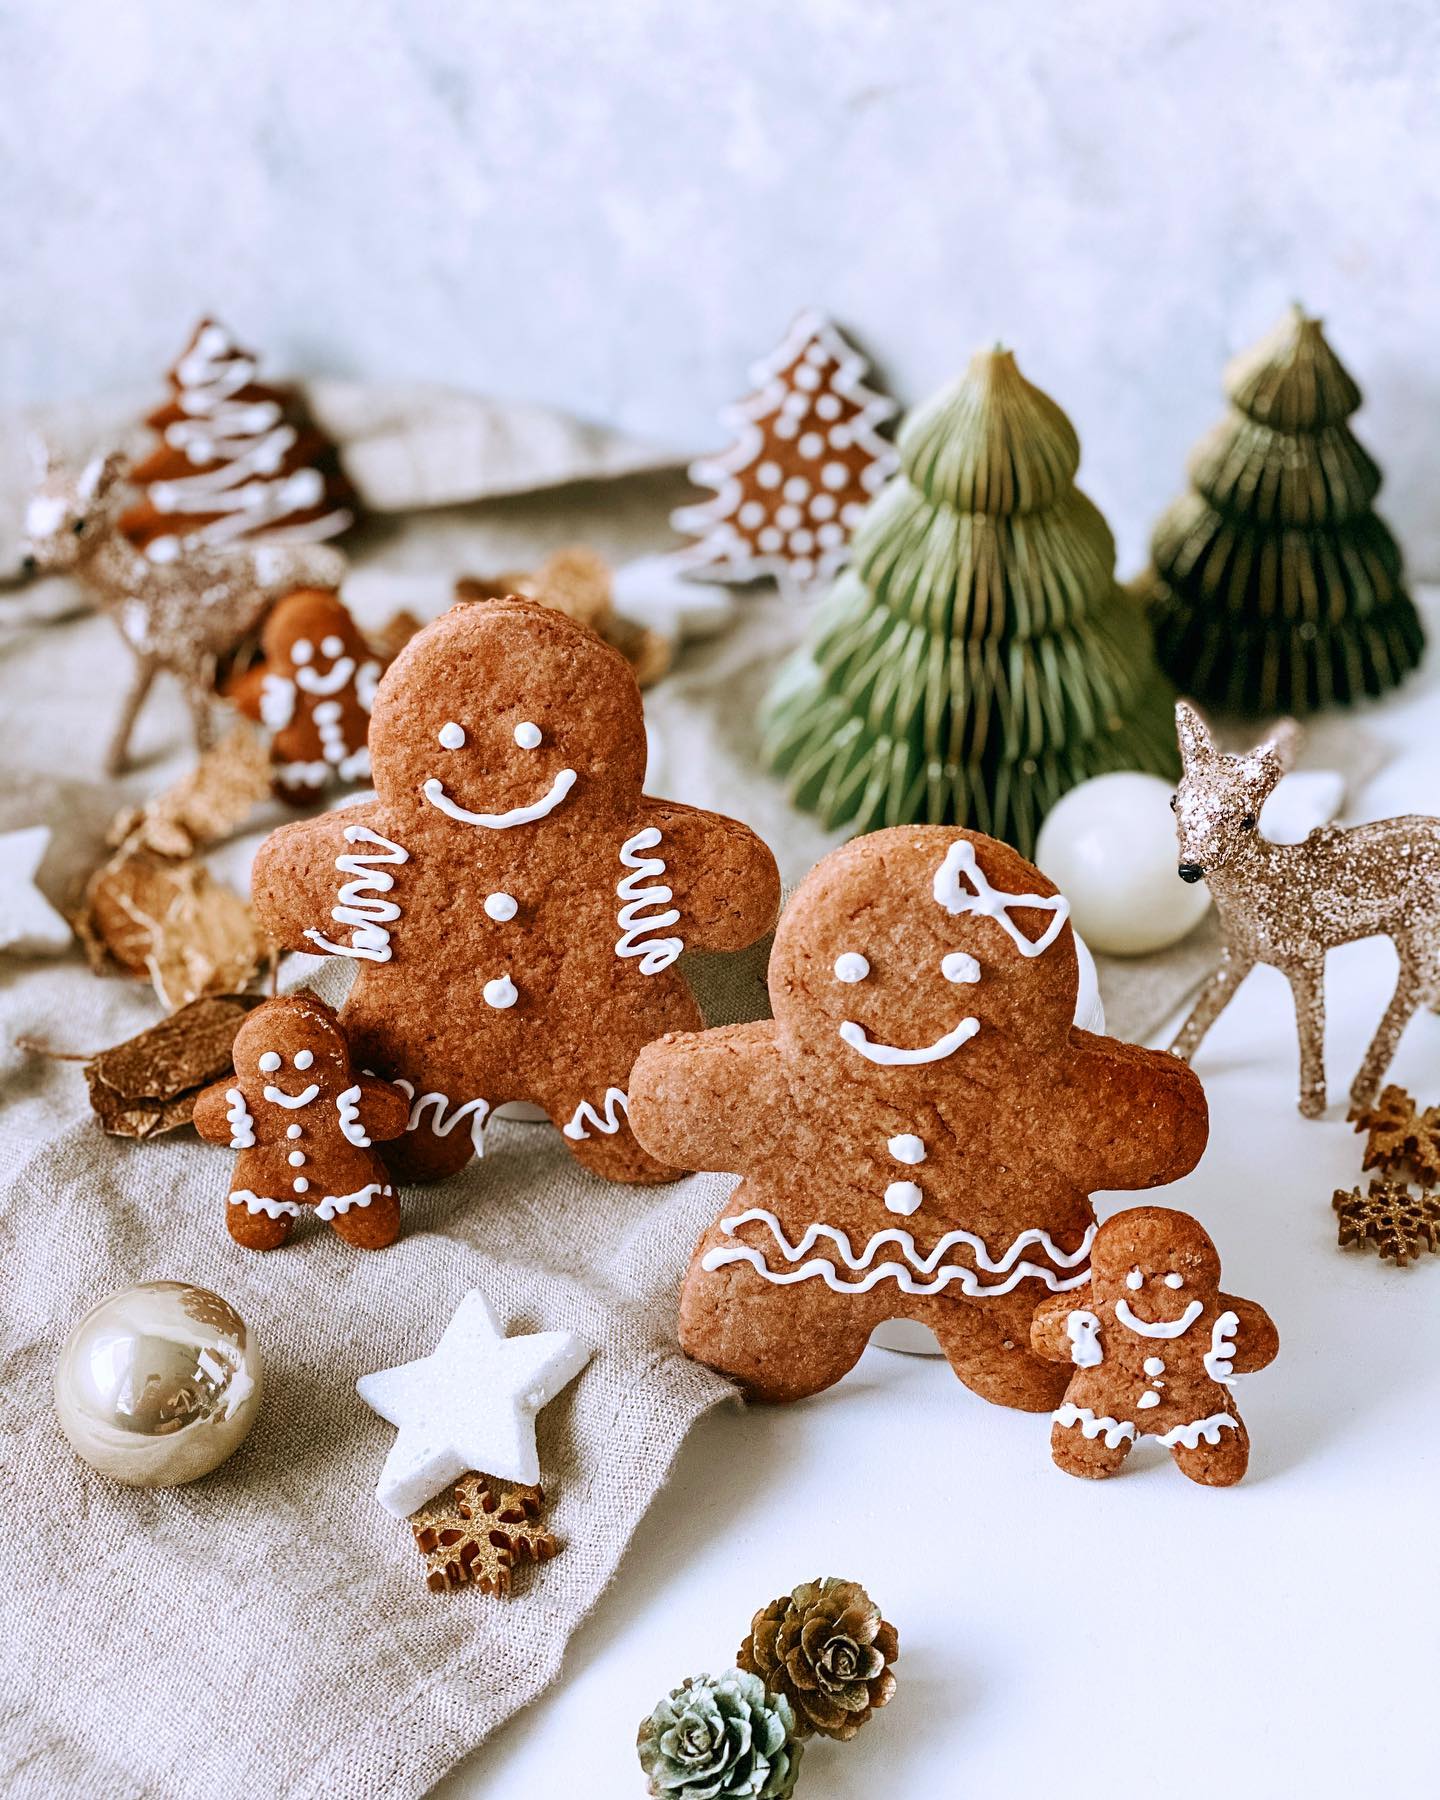 Guten morgen ihr Lieben! ❤️ 
Habt ihr auch so viel Schnee? ❄️ Sieht so schön aus und bei uns freut sich jemand 🐕🥰 riesig auf den Schnee. 

Wir dekorieren heute den Weihnachtsbaum fertig und richten das Kinderzimmer noch fertig ein. Dazu gibt es leckere Gingerbread Cookies 🍪 
Gestern Abend habe ich noch zwei weitere Guetzli Teige vorbereitet, Meringue-Tannenbäume & Macarons 😅 Wie sagt man so schön: Just go with the flow ✨ 
Babyboy schlummert noch im Bäuchlein und soll es auch sein 👶🏽🥰 

So ich fang mal an mit meinen Gingerbread Cookies – sind einfach in der Zubereitung und wer Lebkuchen mag, wird diese Gingerbread Plätzchen ganz bestimmt lieben! ❤️
 
Teig
• 125 g Butter
• 80 g Dattelsirup
• 80 g Brauner Zucker
• 1 Ei
• 320 g Dinkelmehl hell
• 2 TL Lebkuchengewürz
• 2 TL Kakaopulver
• 1 Prise Salz
• 1 TL Backpulver
 
Glasur
• 1 Eiweiss
• 180 – 200 g Puderzucker
• 1 EL Zitronensaft
 
 
1. Dattelsirup, Zucker und Butter mit einem Rührgerät zu einer hellen, luftigen Massen rühren. Dann das Ei hinzugeben und mischen.
2. Mehl, Lebkuchengewürz, Kakaopulver, Backpulver und Mehl mischen und zur feuchten Masse hinzugeben und zu einem glatten Teig verarbeiten.
3. Den Teig in Klarsichtfolie einwickeln und für ca. 1h kühl stellen.
4. Backofen auf 160 Grad Umluft vorheizen und währenddessen den Teig mit Mehl auswallen (ca. 5mm) und dann die Gingerbread Männchen ausstechen.
Die Gingerbread Cookies nun für 10-12 min. backen.
5. Für die Zuckerglasur: 1 Eiweiss steif schlagen, Puderzucker und Zitronensaft hinzugeben und rühren bis ihr eine dickflüssige Masse habt, dann die Cookies verzieren und trocknen lassen.

.
.
.

#corazonfood #gingerbread #gingerbreadcookies #lebkuchen  #christmascookies #cookies #backenistliebe #ilovebaking #backenmachtglücklich #homemadewithlove #thefeedfeed #food#swissfoodblogger #foodblogger #myopenkitchen #mom2be #ssw39 #foodphotography  #switzerland